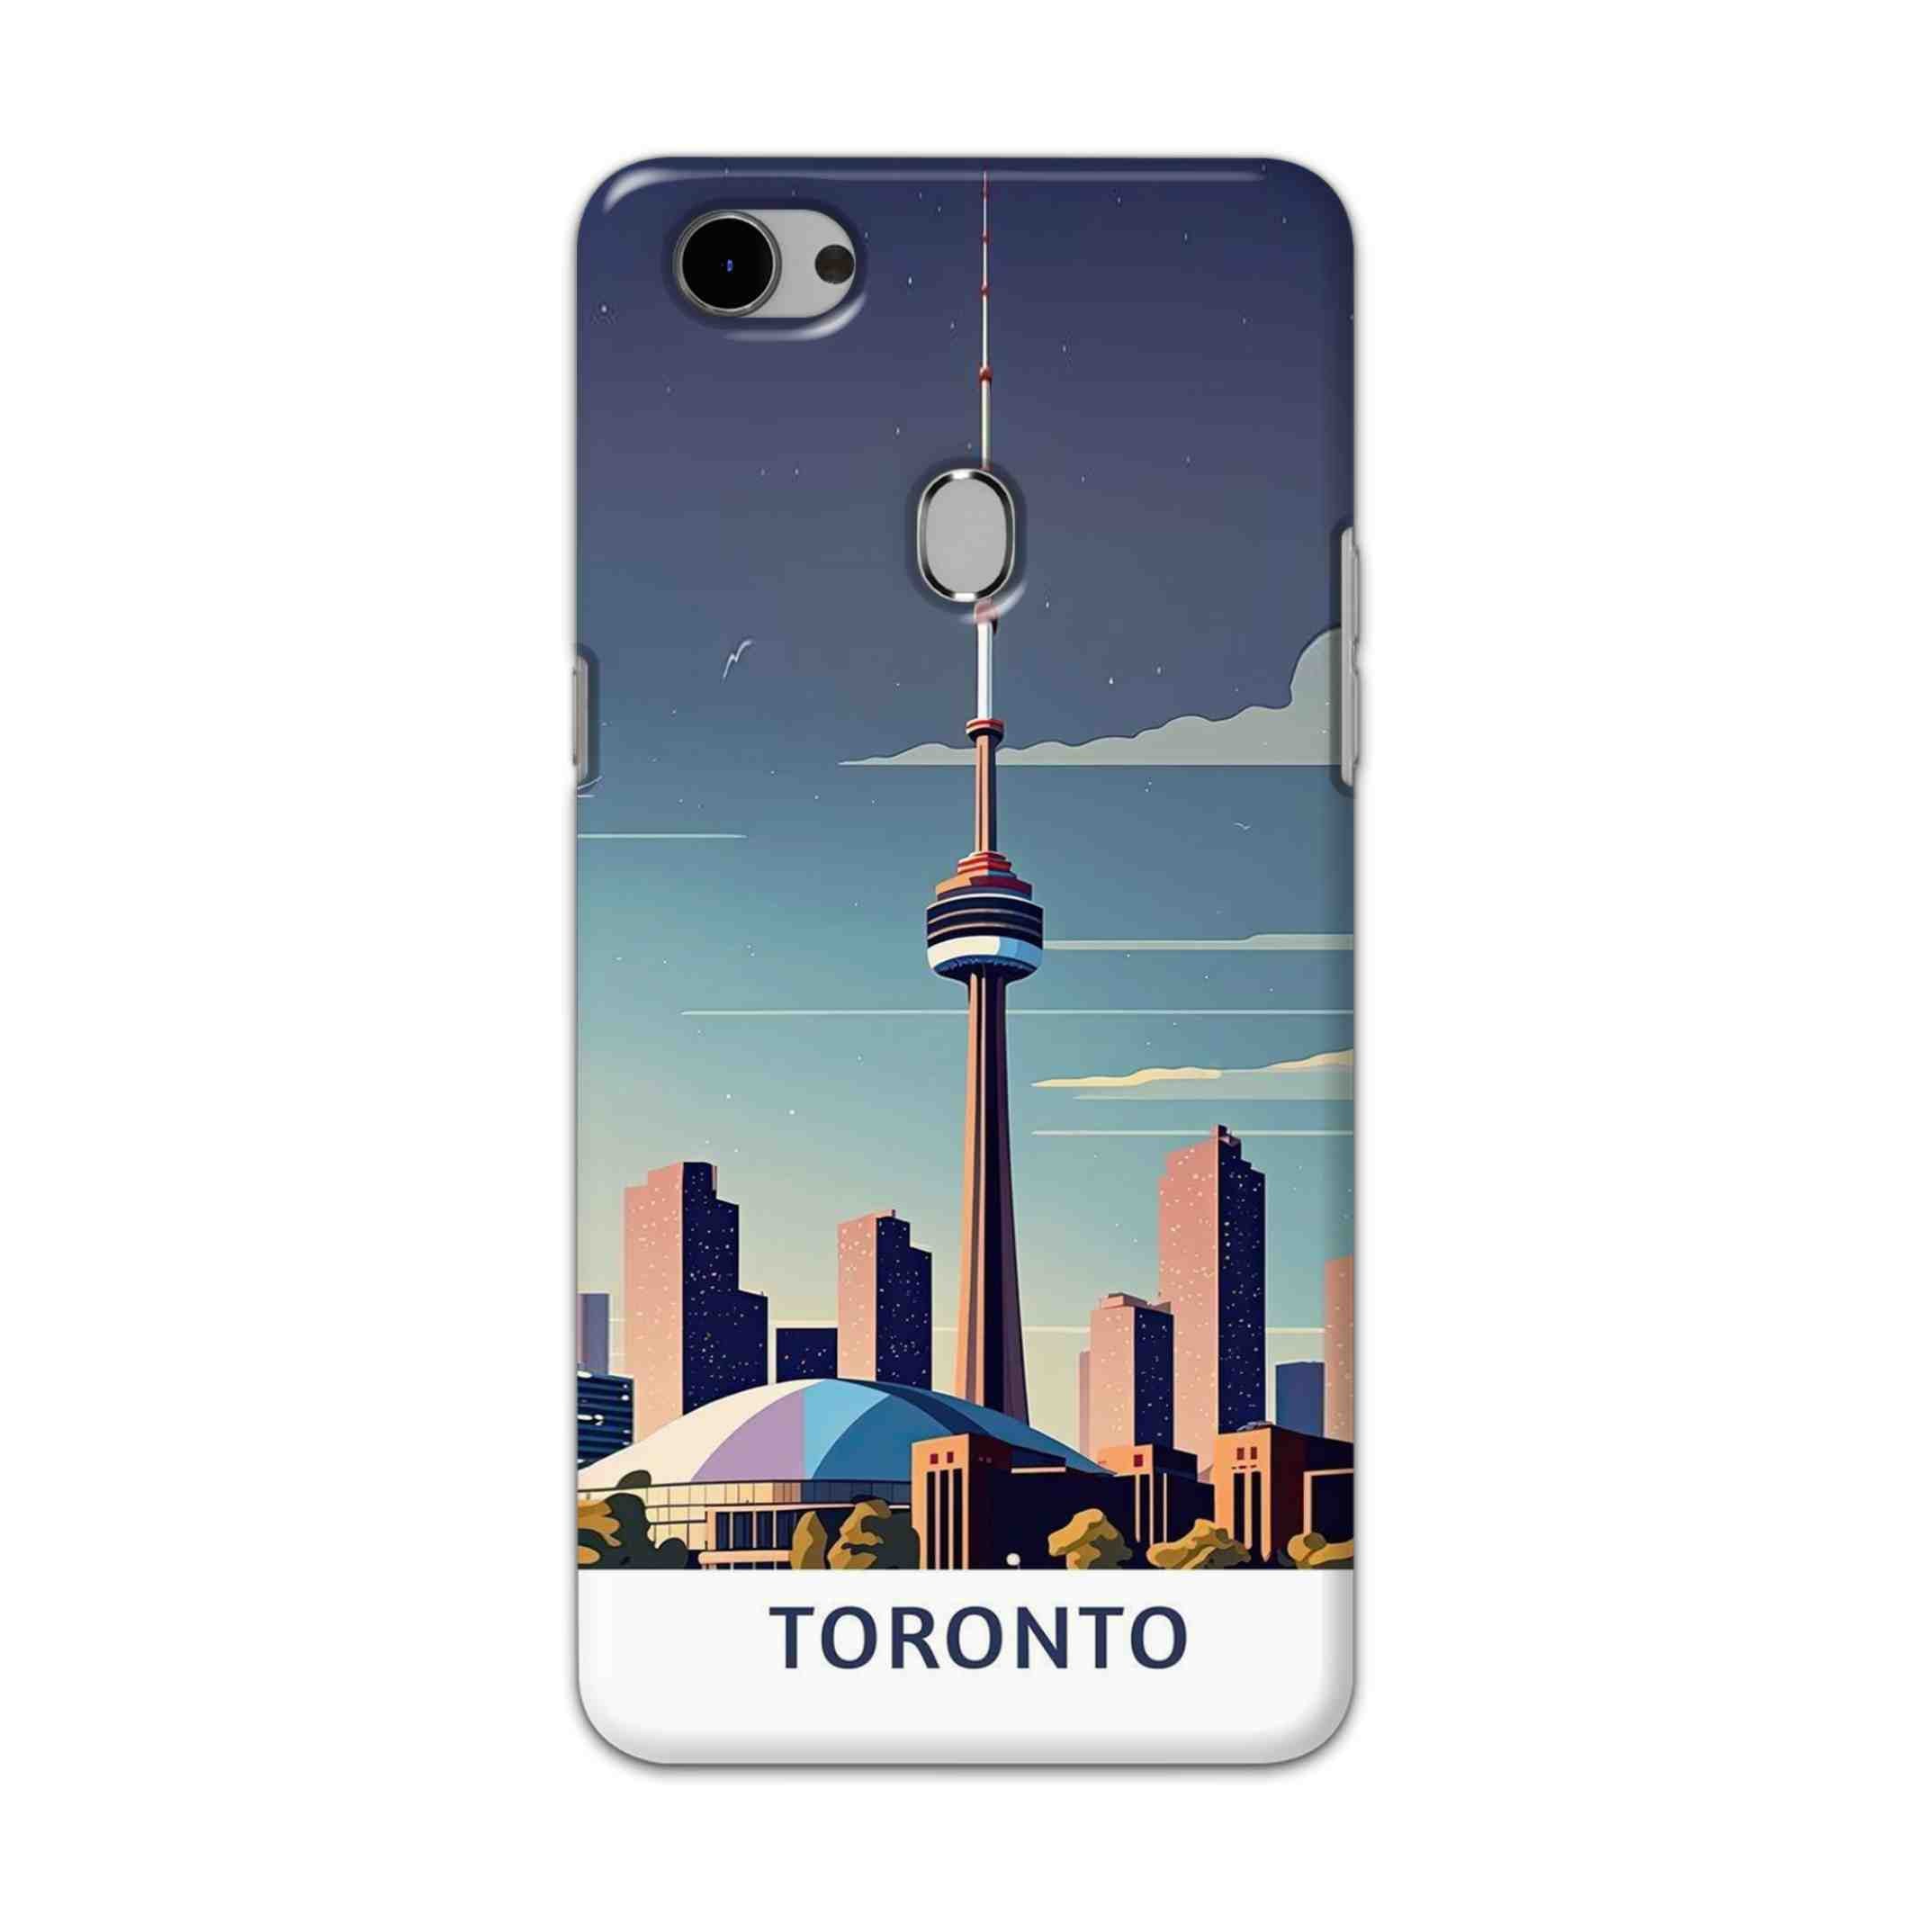 Buy Toronto Hard Back Mobile Phone Case Cover For Oppo F7 Online